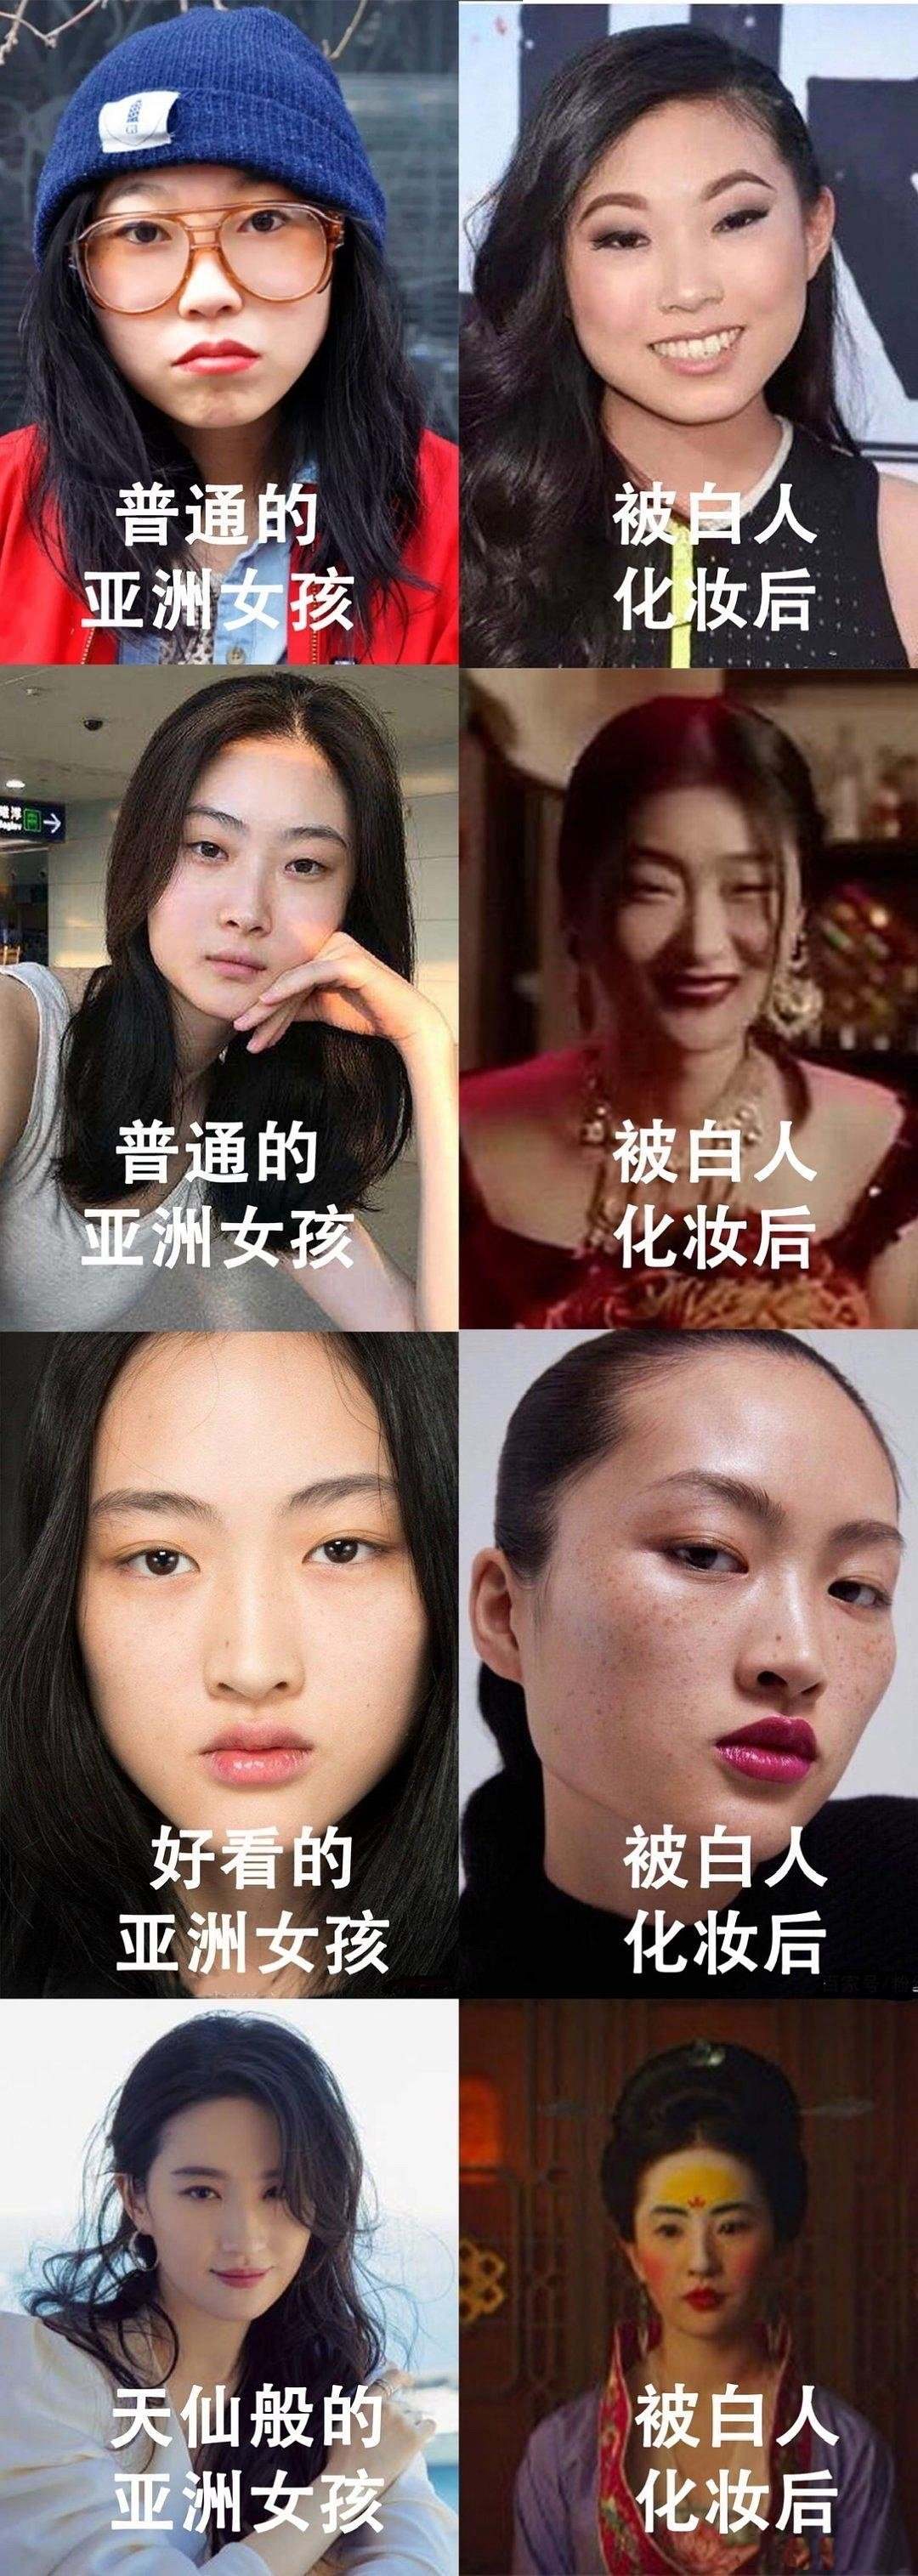 天生欧美脸的中国人图片